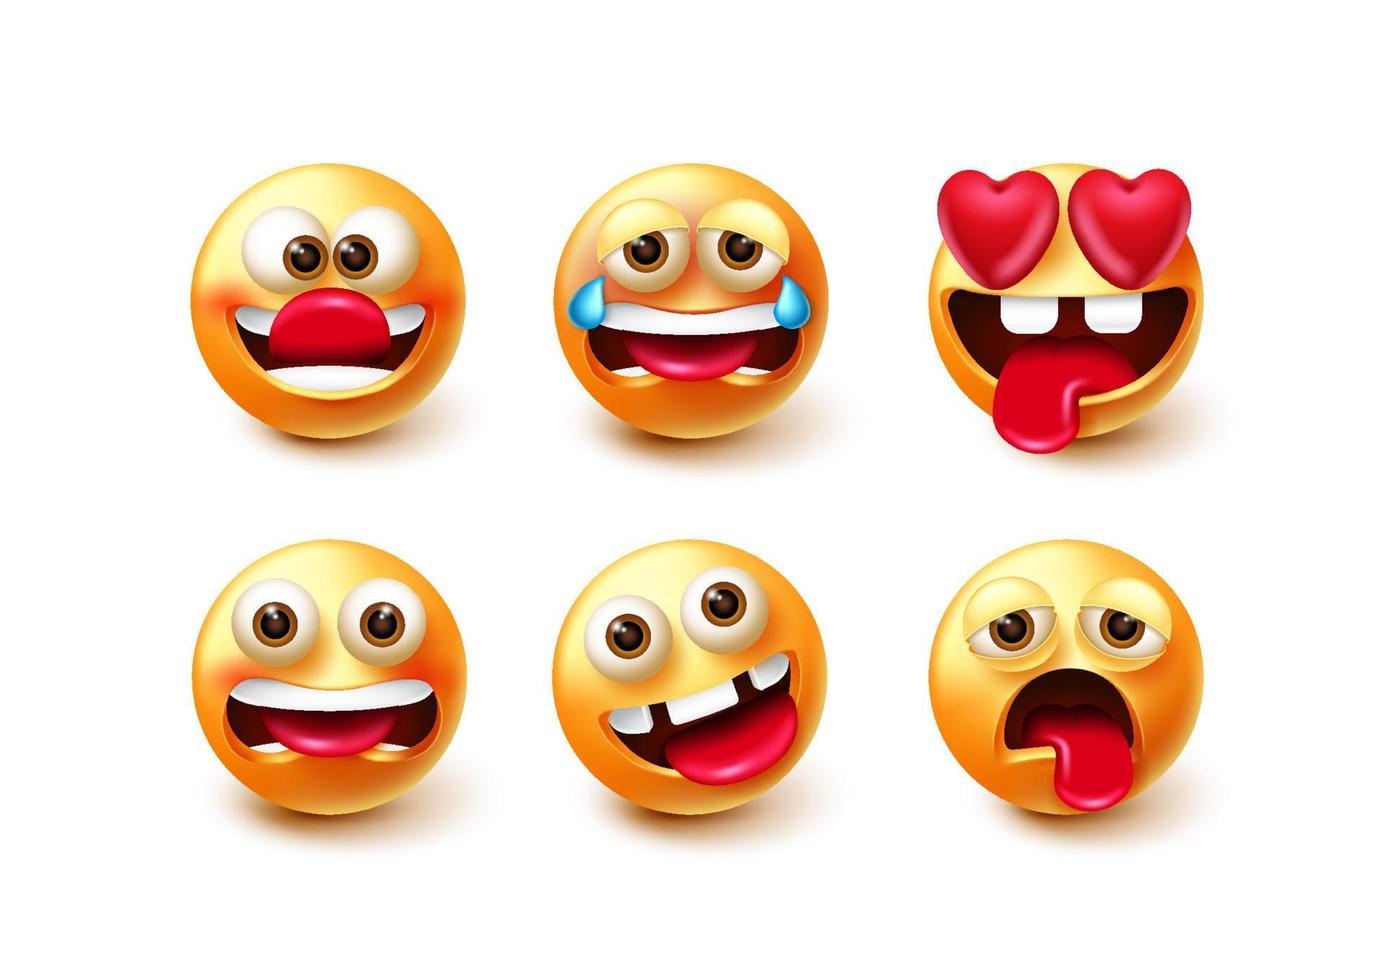 jeu de vecteurs de caractères emoji. émoticônes personnages 3d dans des expressions faciales drôles, folles, pleurantes et amoureuses isolées sur fond blanc pour la conception de la collection d'emojis. illustration vectorielle vecteur